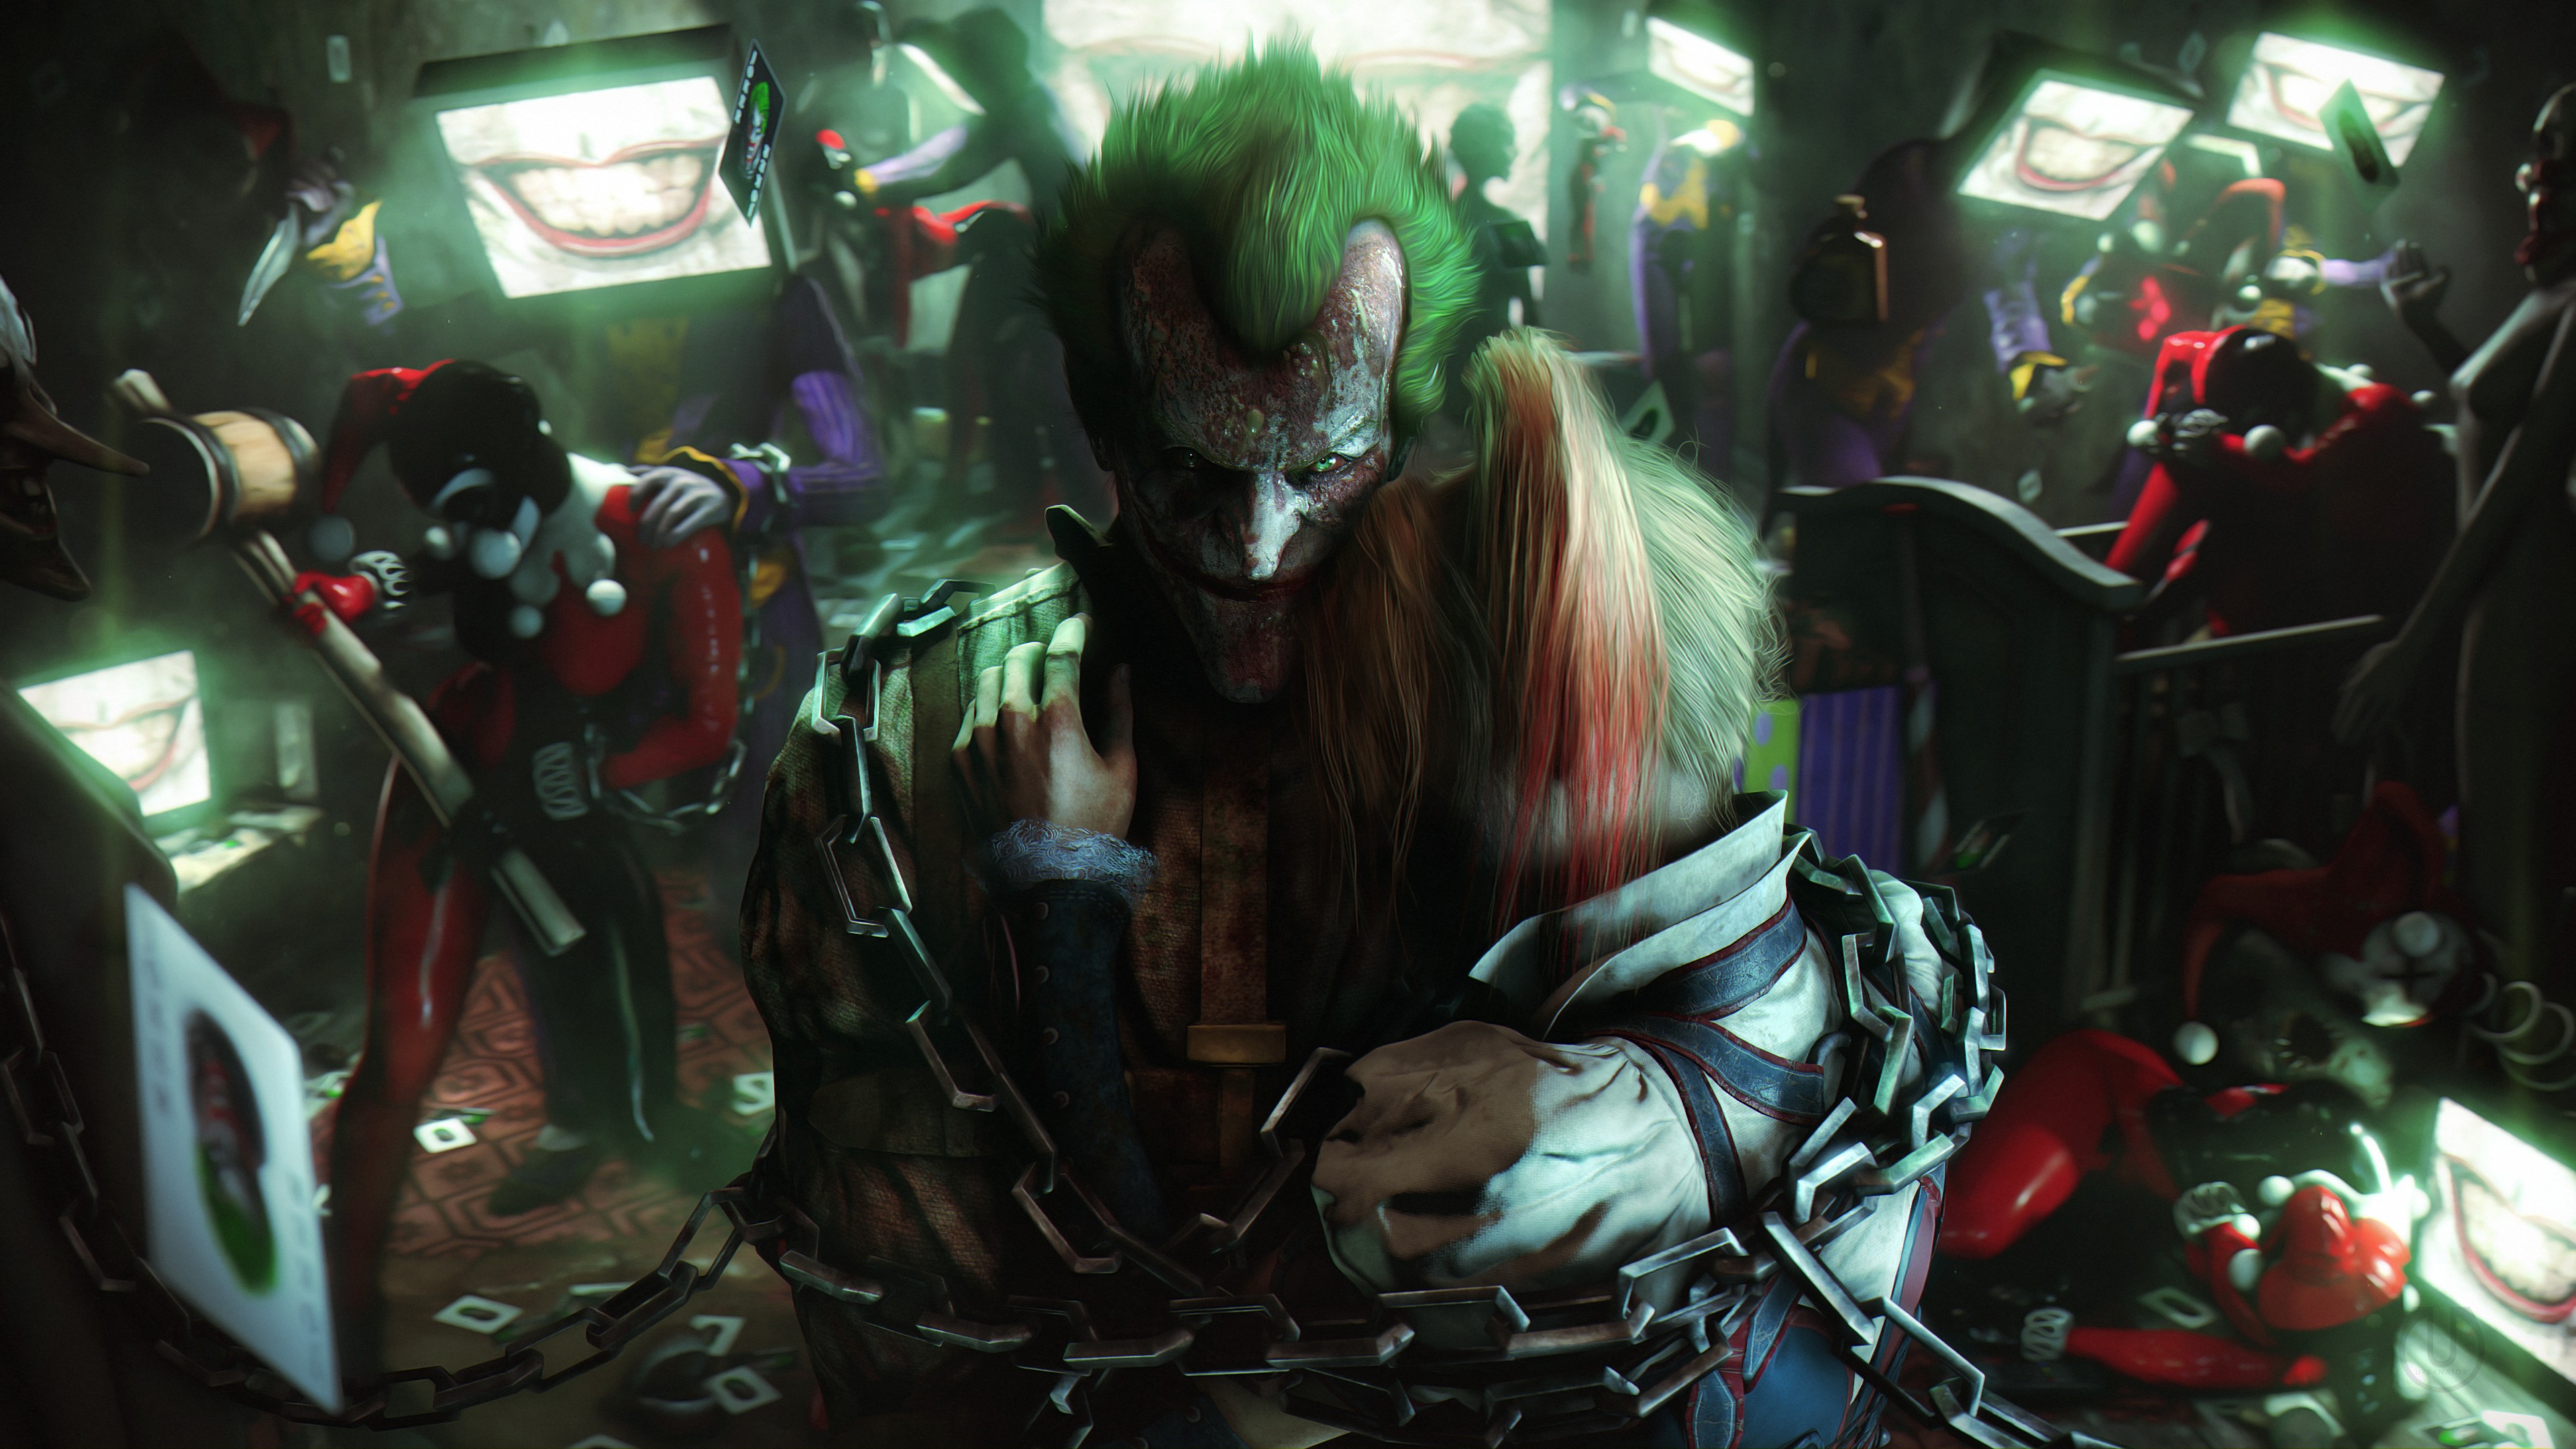 Urbanator, Joker, Harley Quinn, Batman: Arkham Knight, Fan art, Video